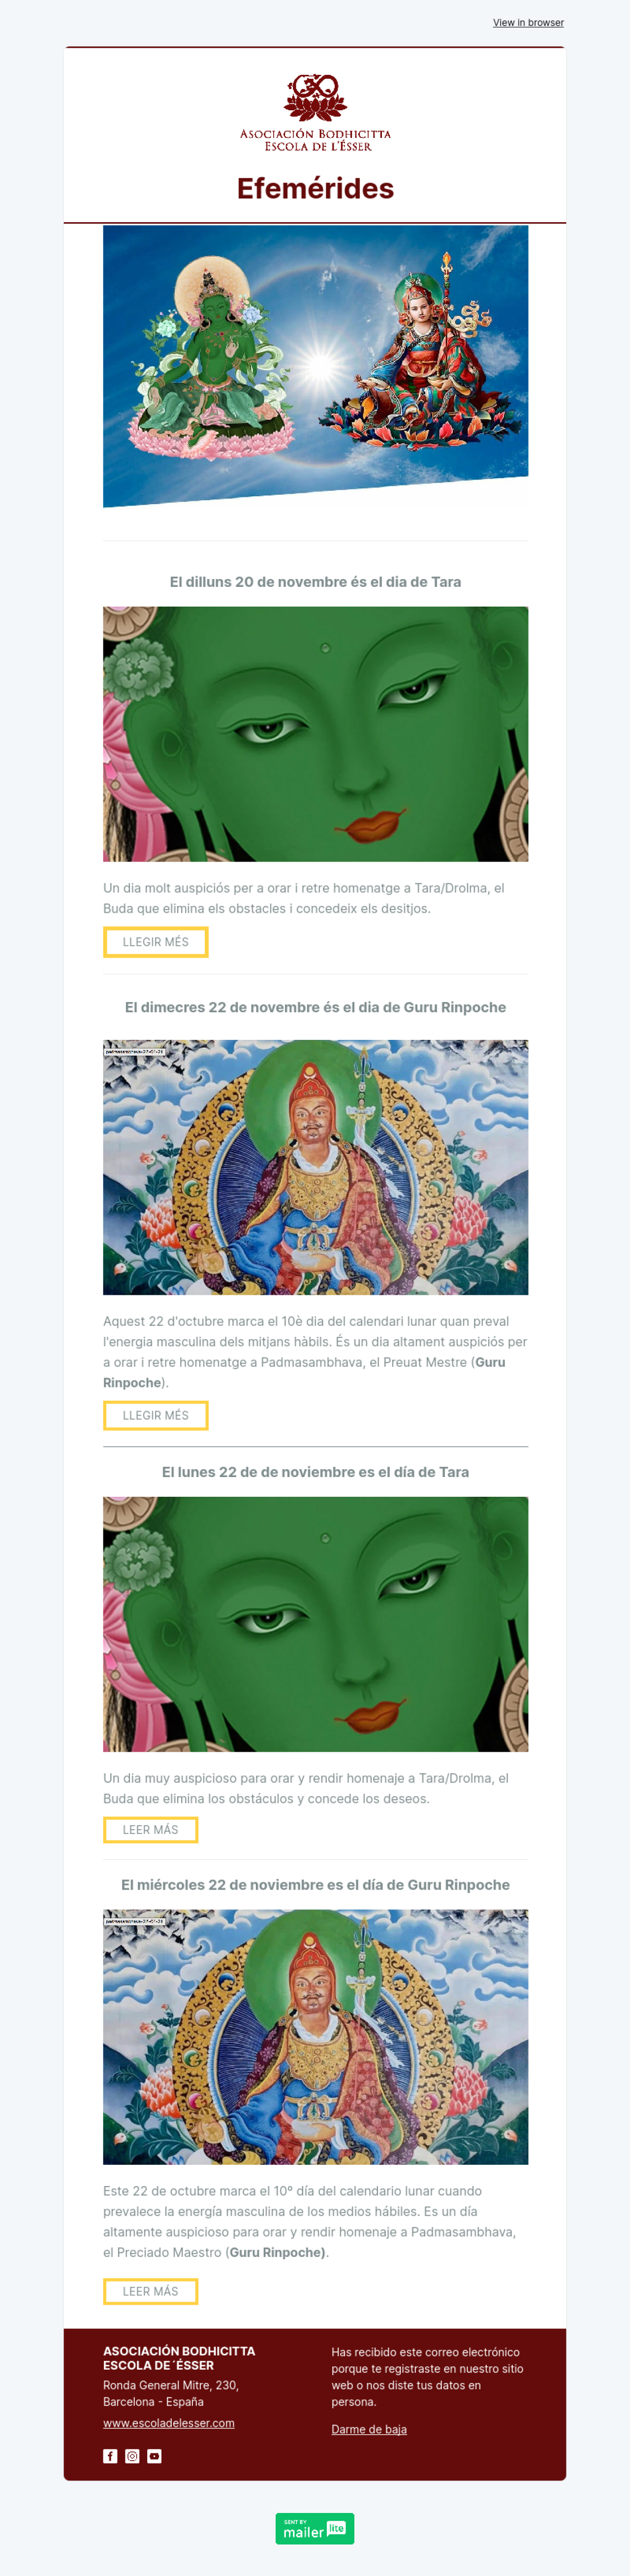 Asociación Bodhicitta ejemplo - Diseño de MailerLite